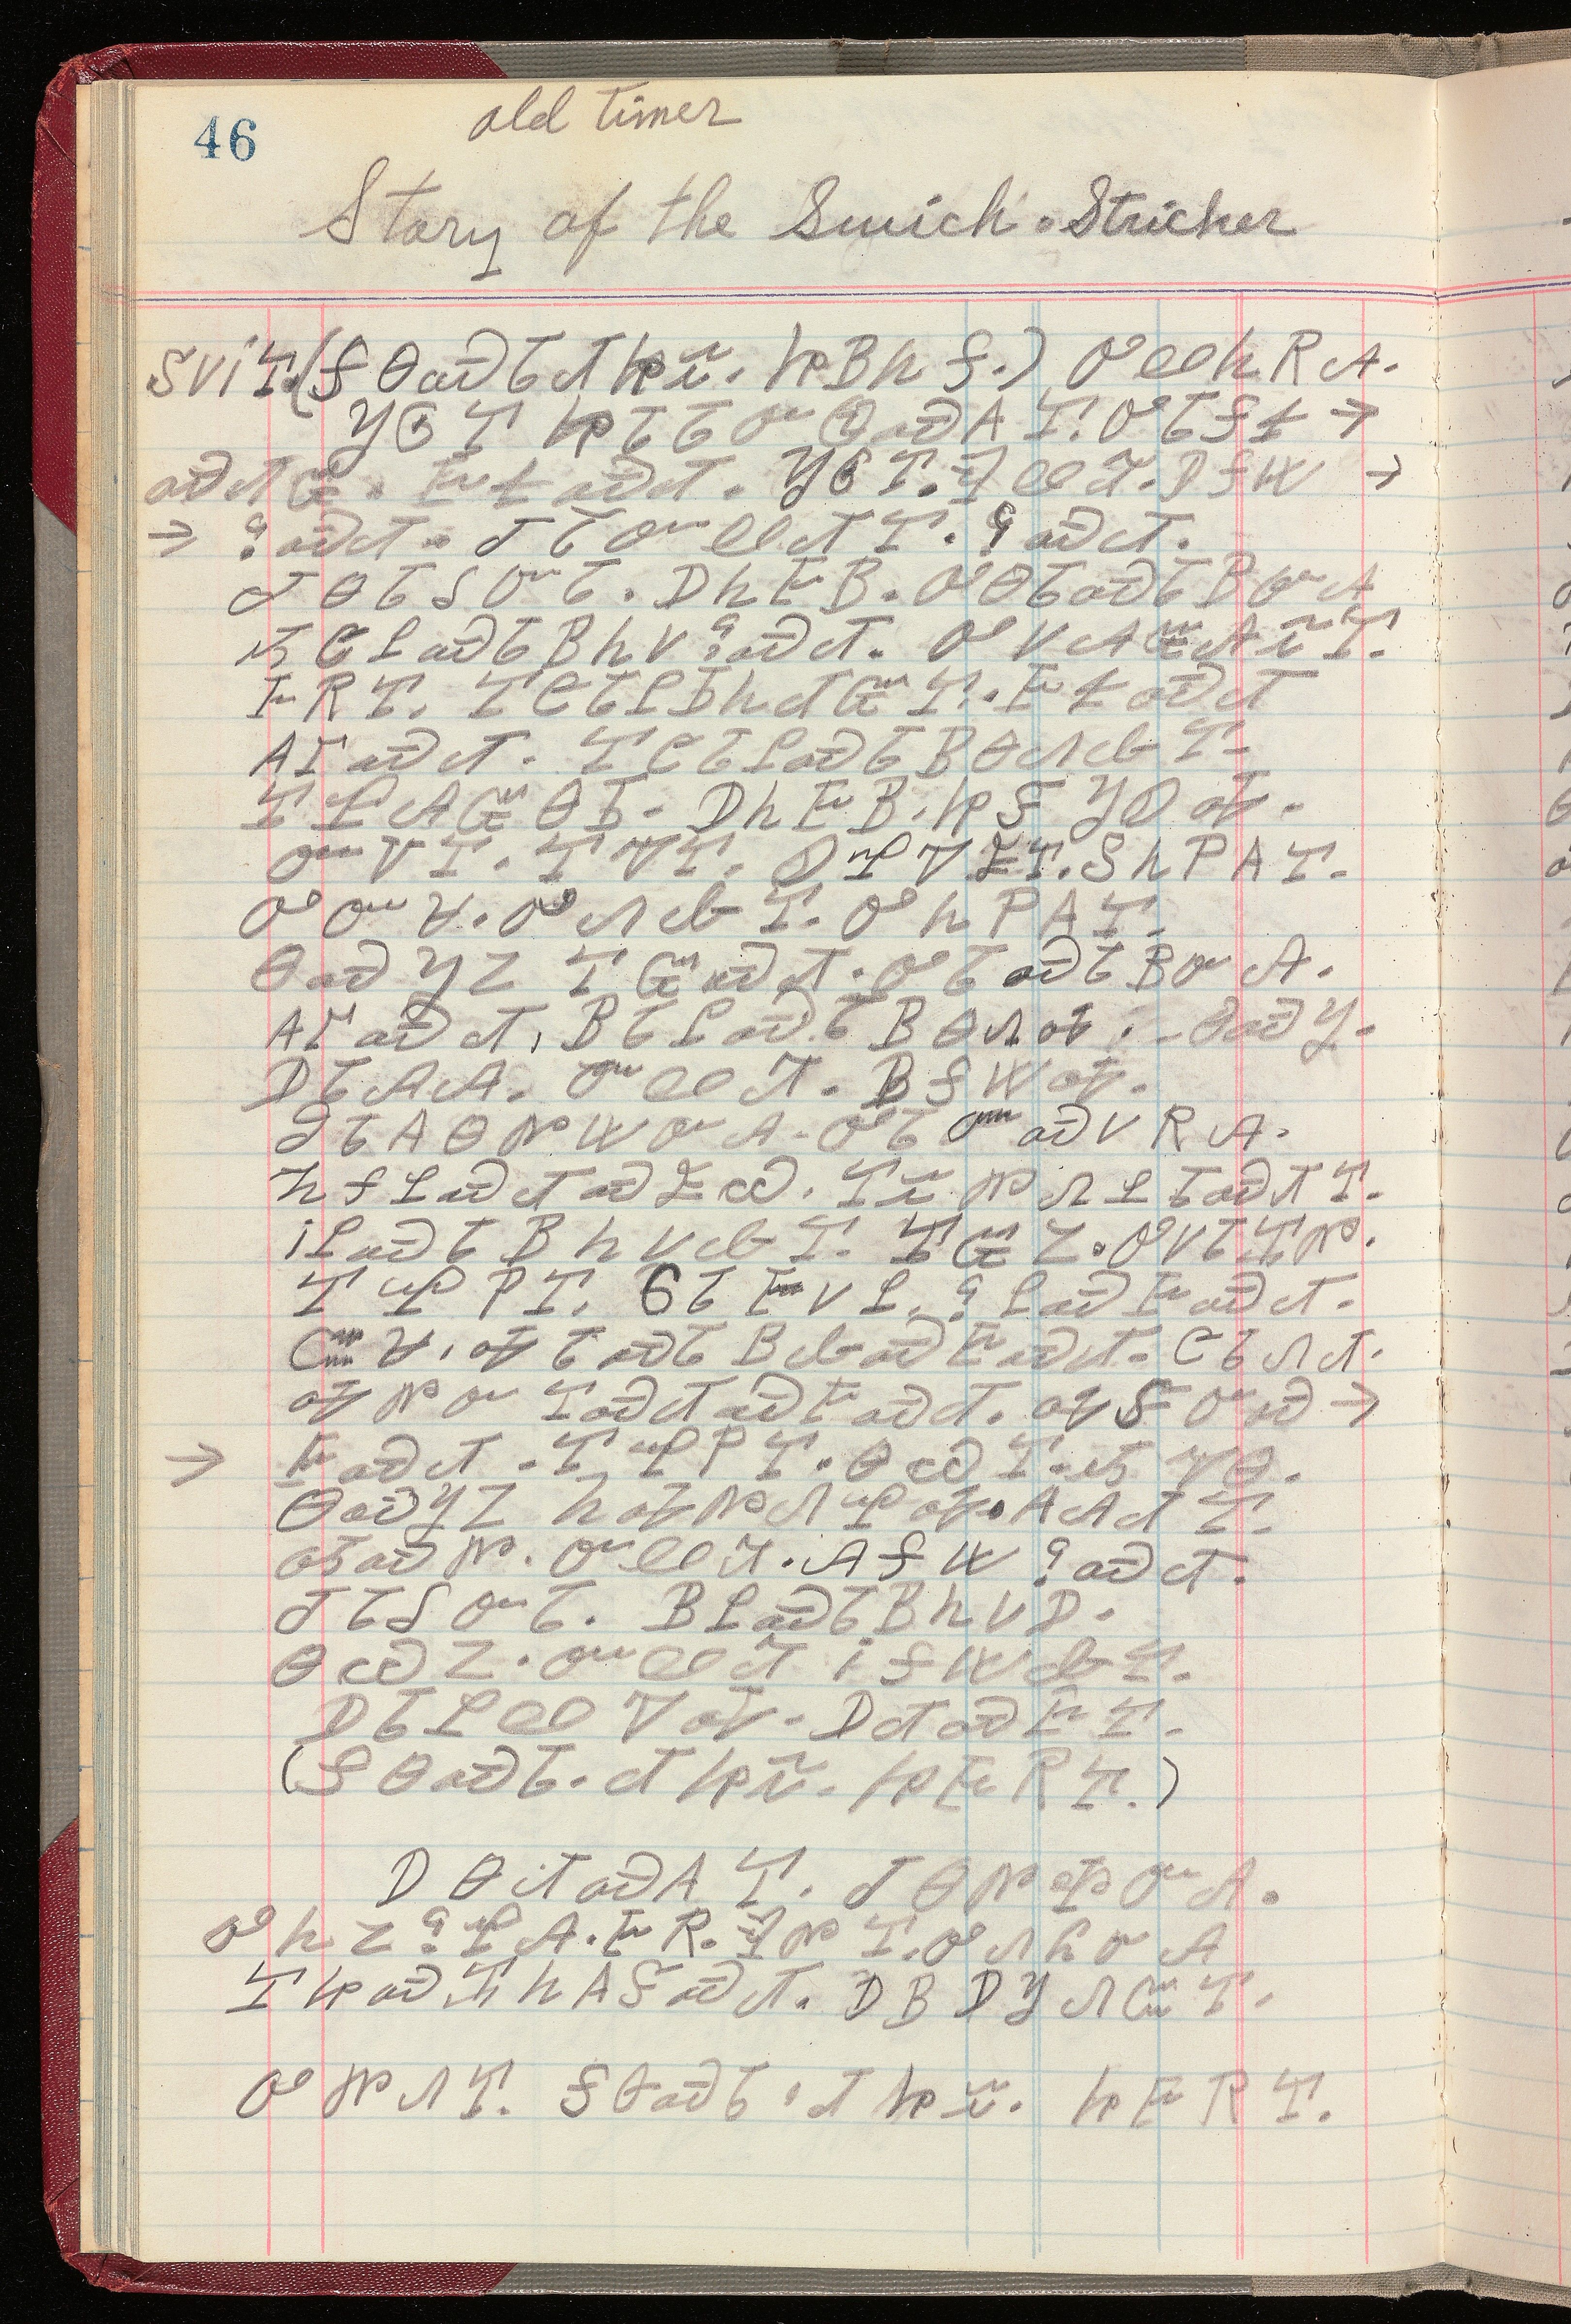 Manuscript Page 1